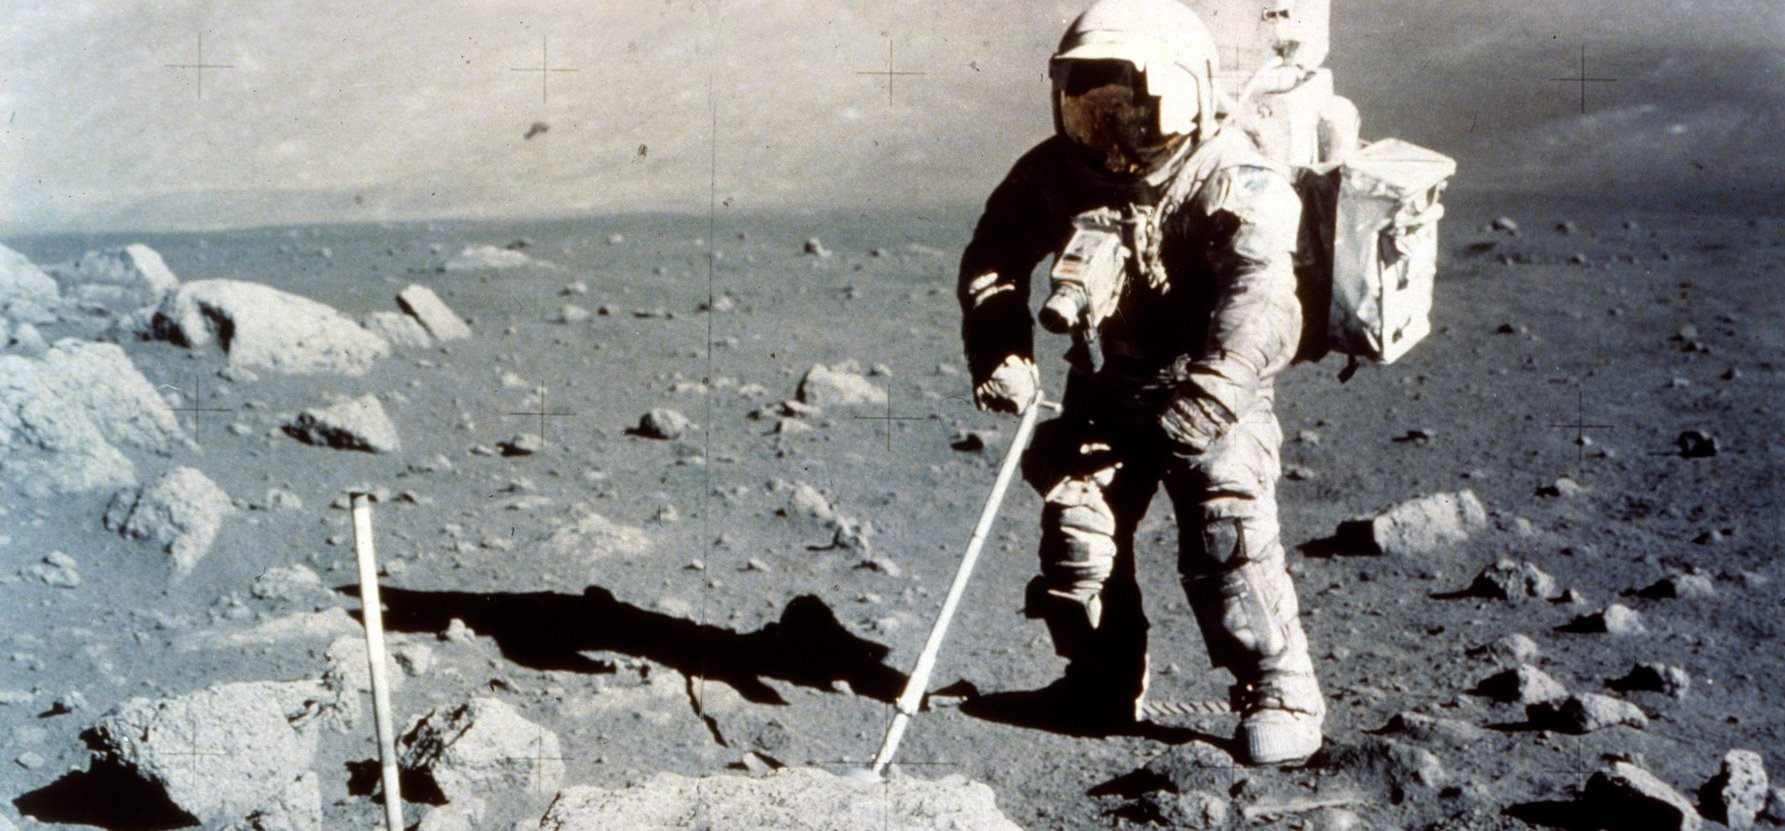 Hatalmas bakit követtek el az amerikaiak az utolsó holdküldetésen, majdnem az űrhajósuk életébe került